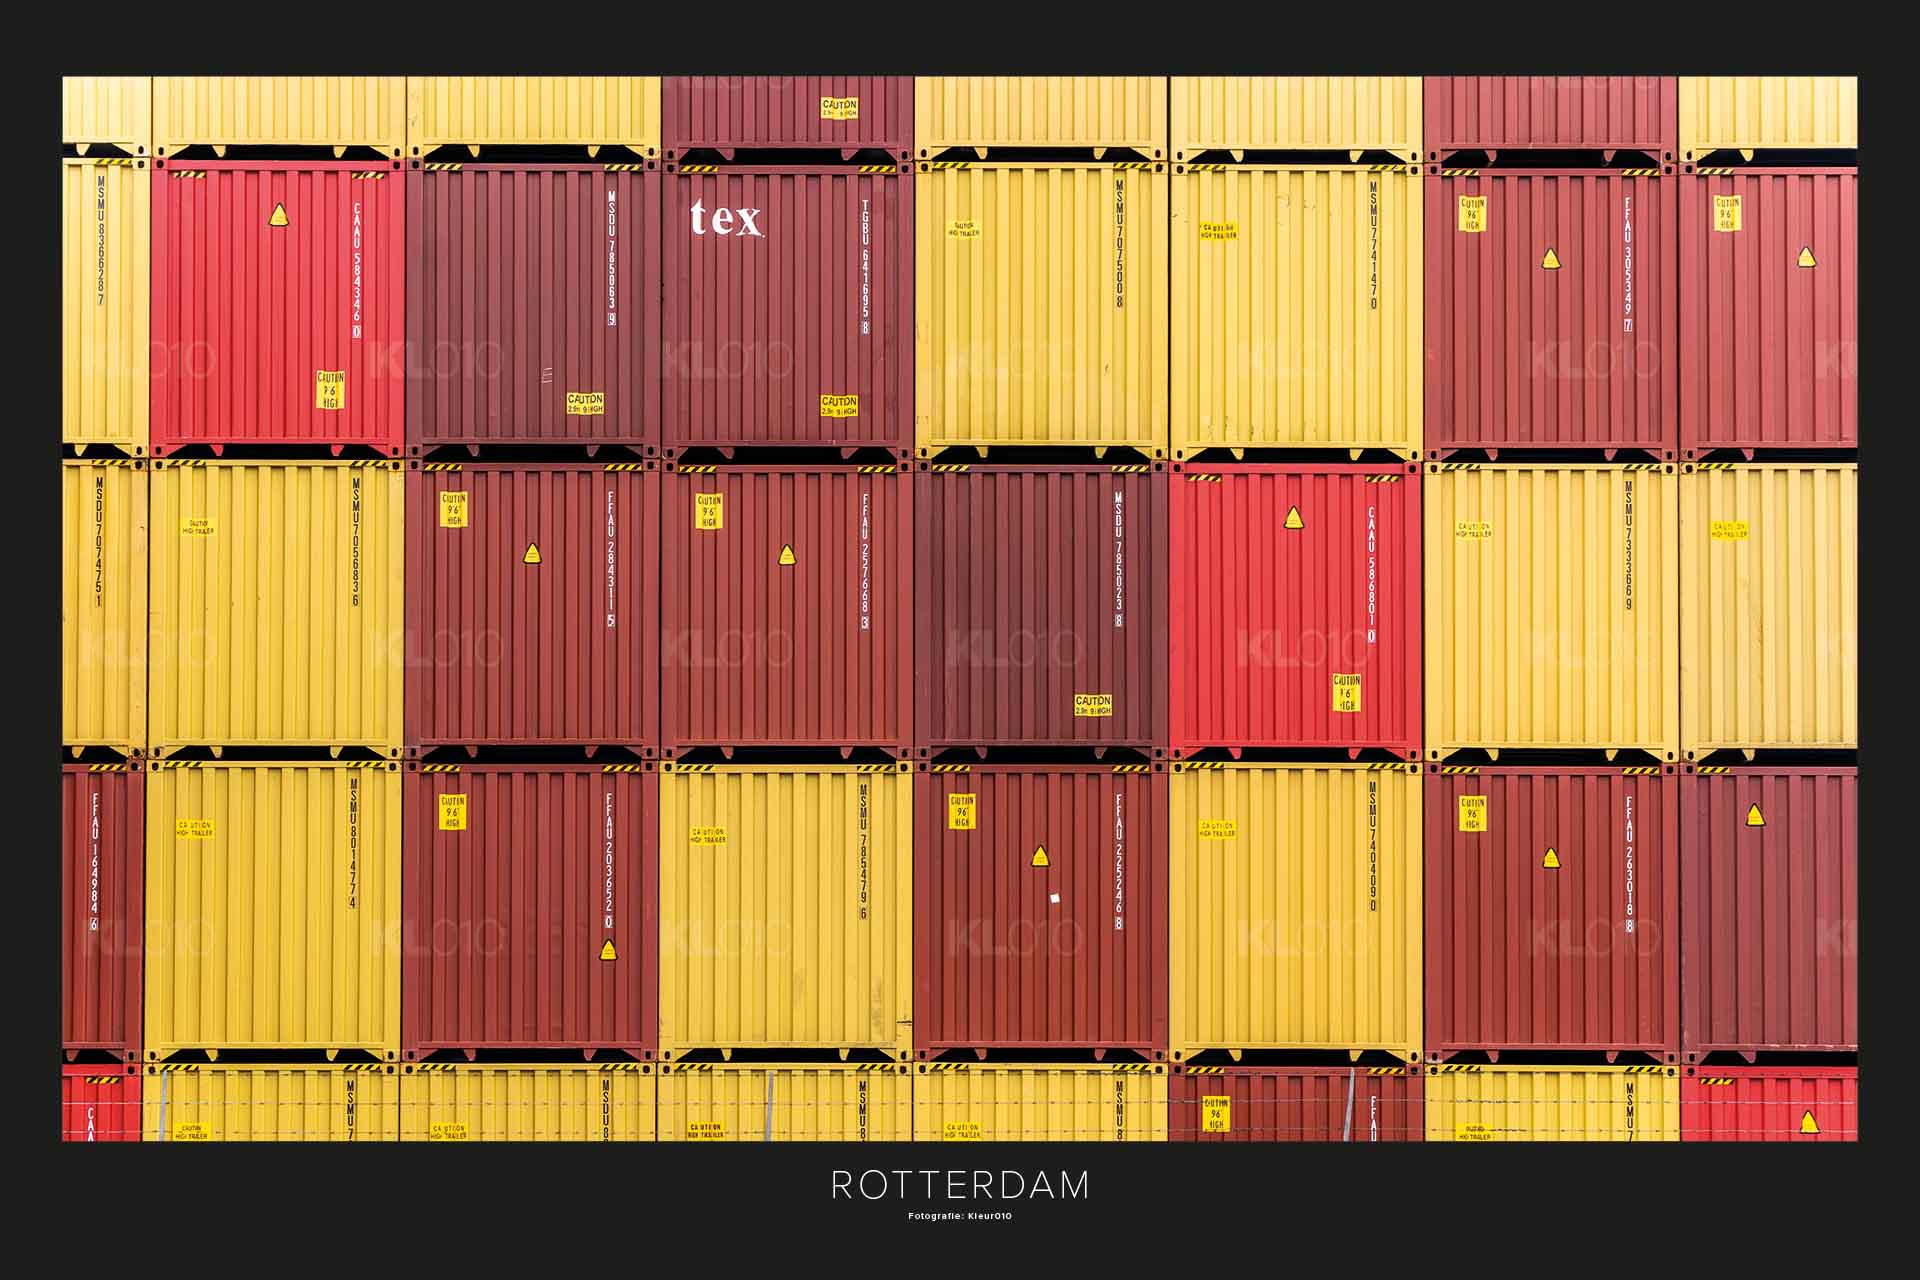 De perfecte stack - Containers Maasvlakte